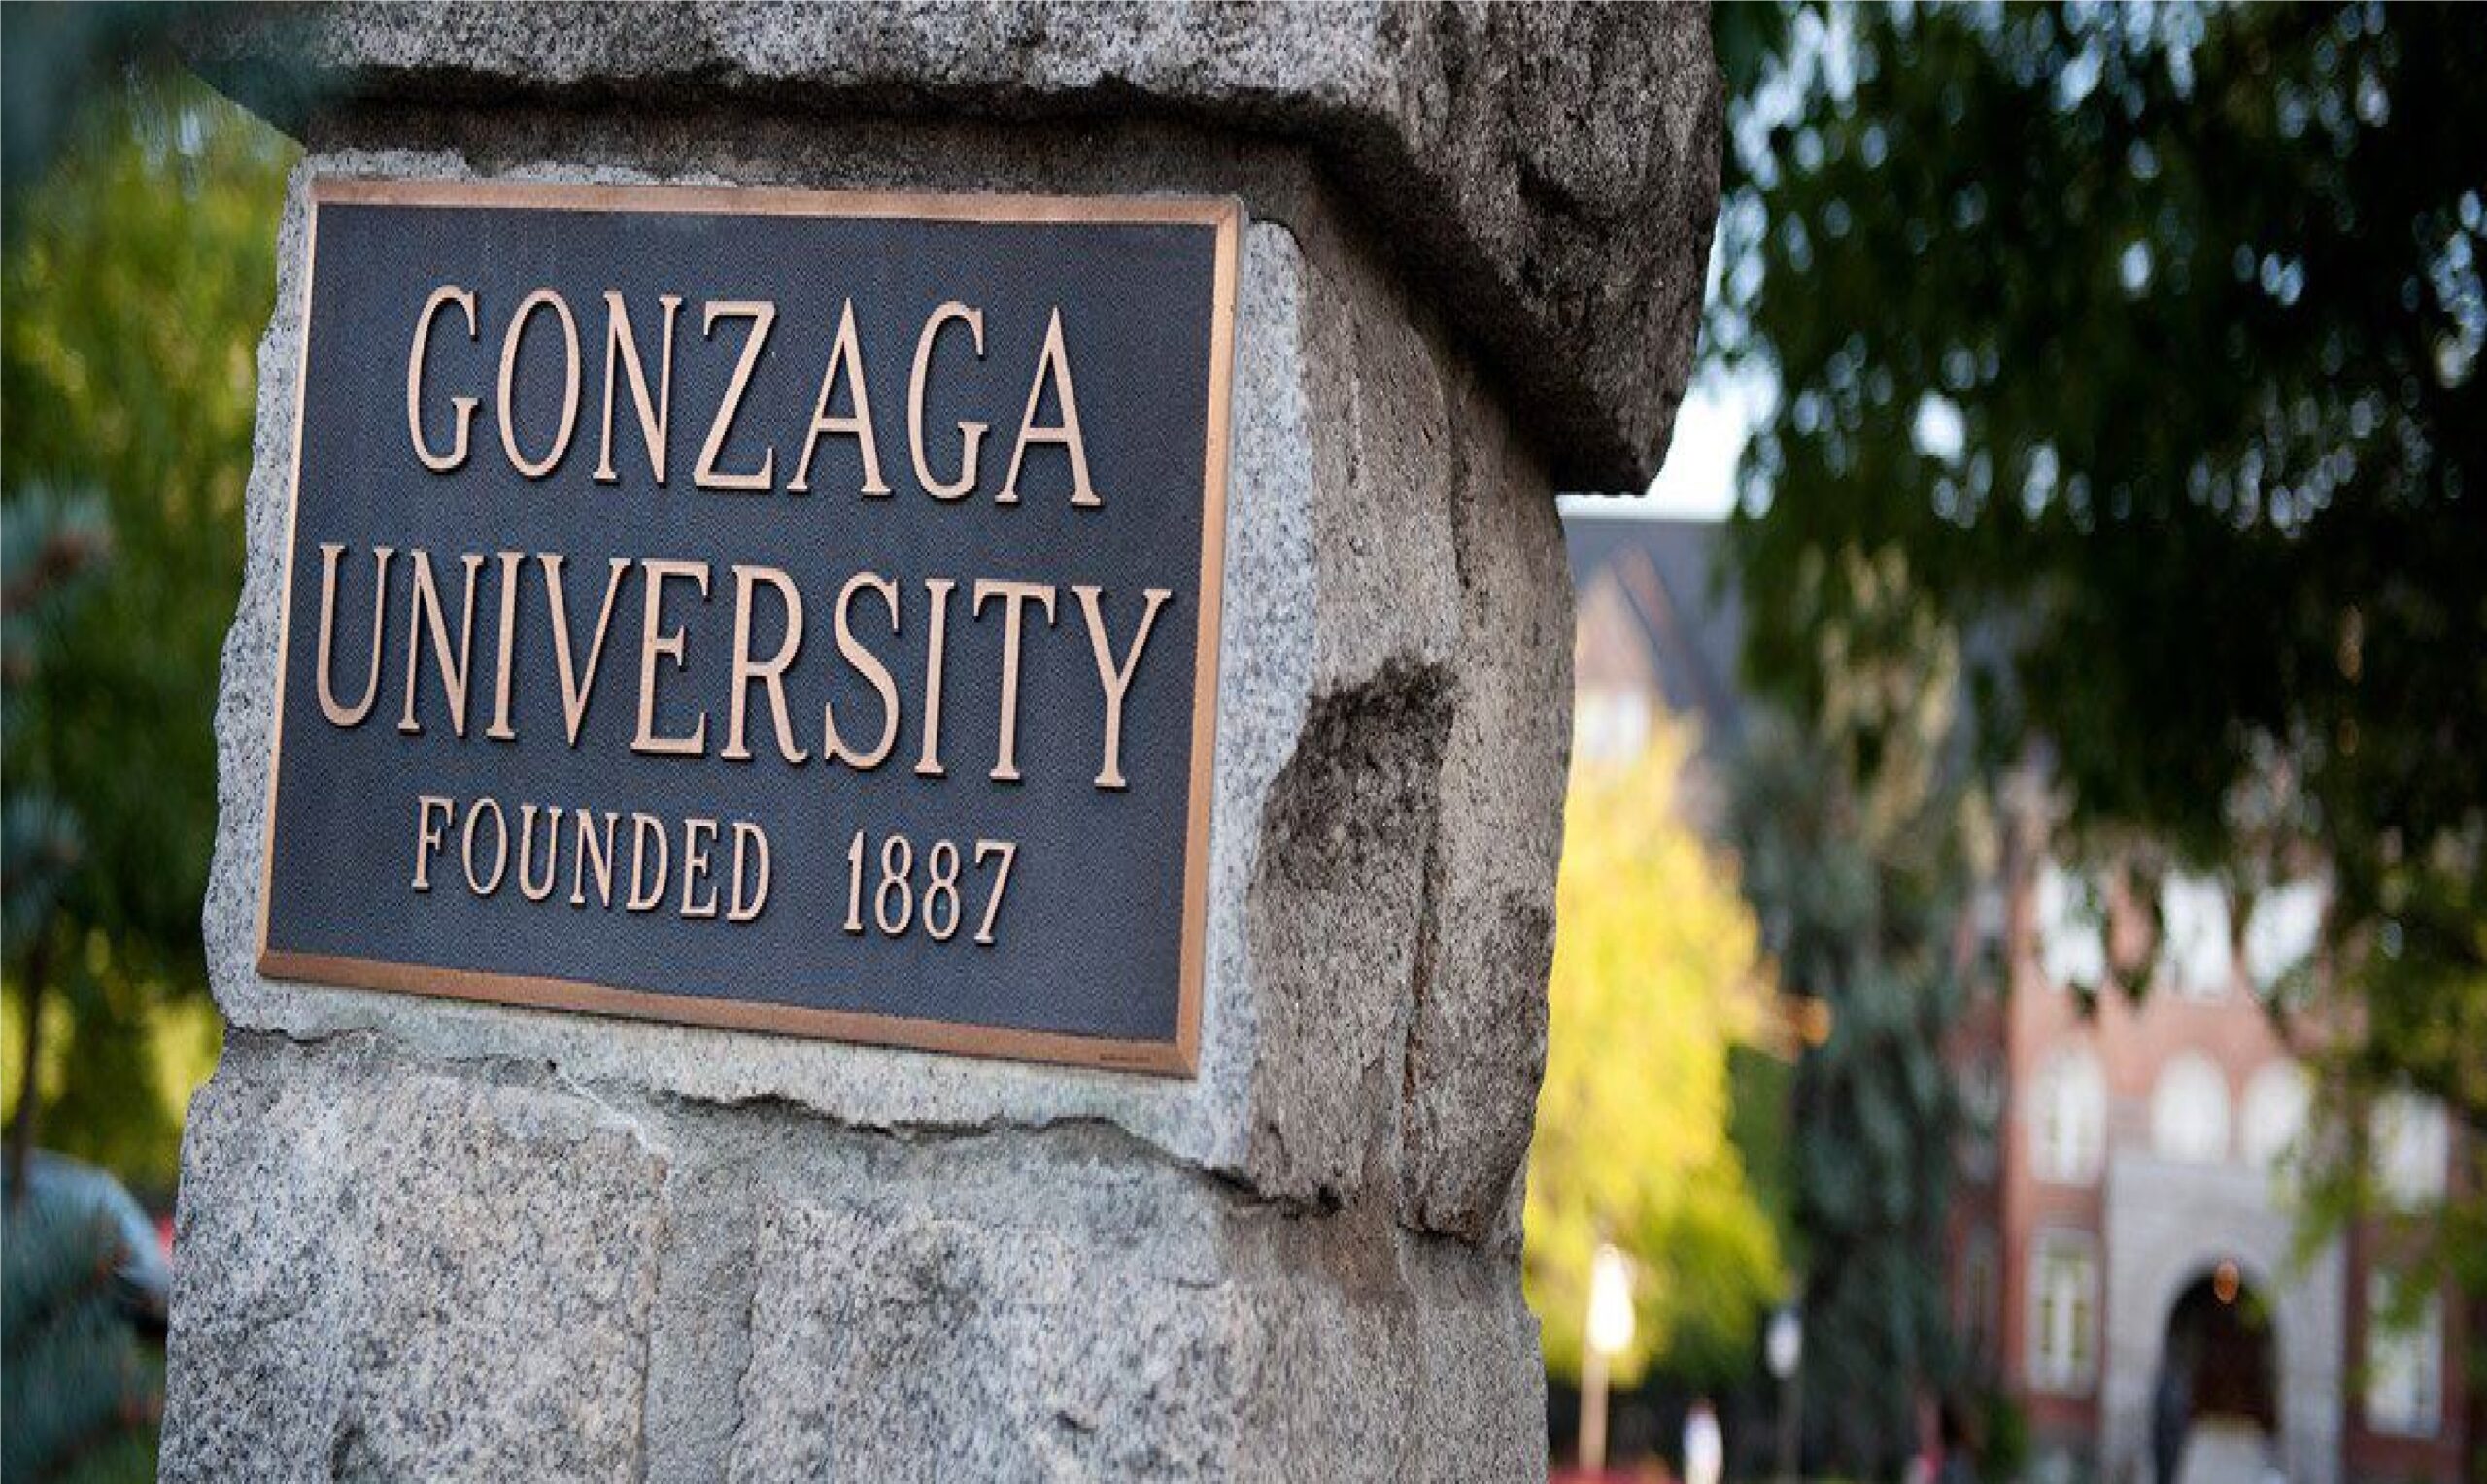 جامعة جونزاغا Gonzaga University